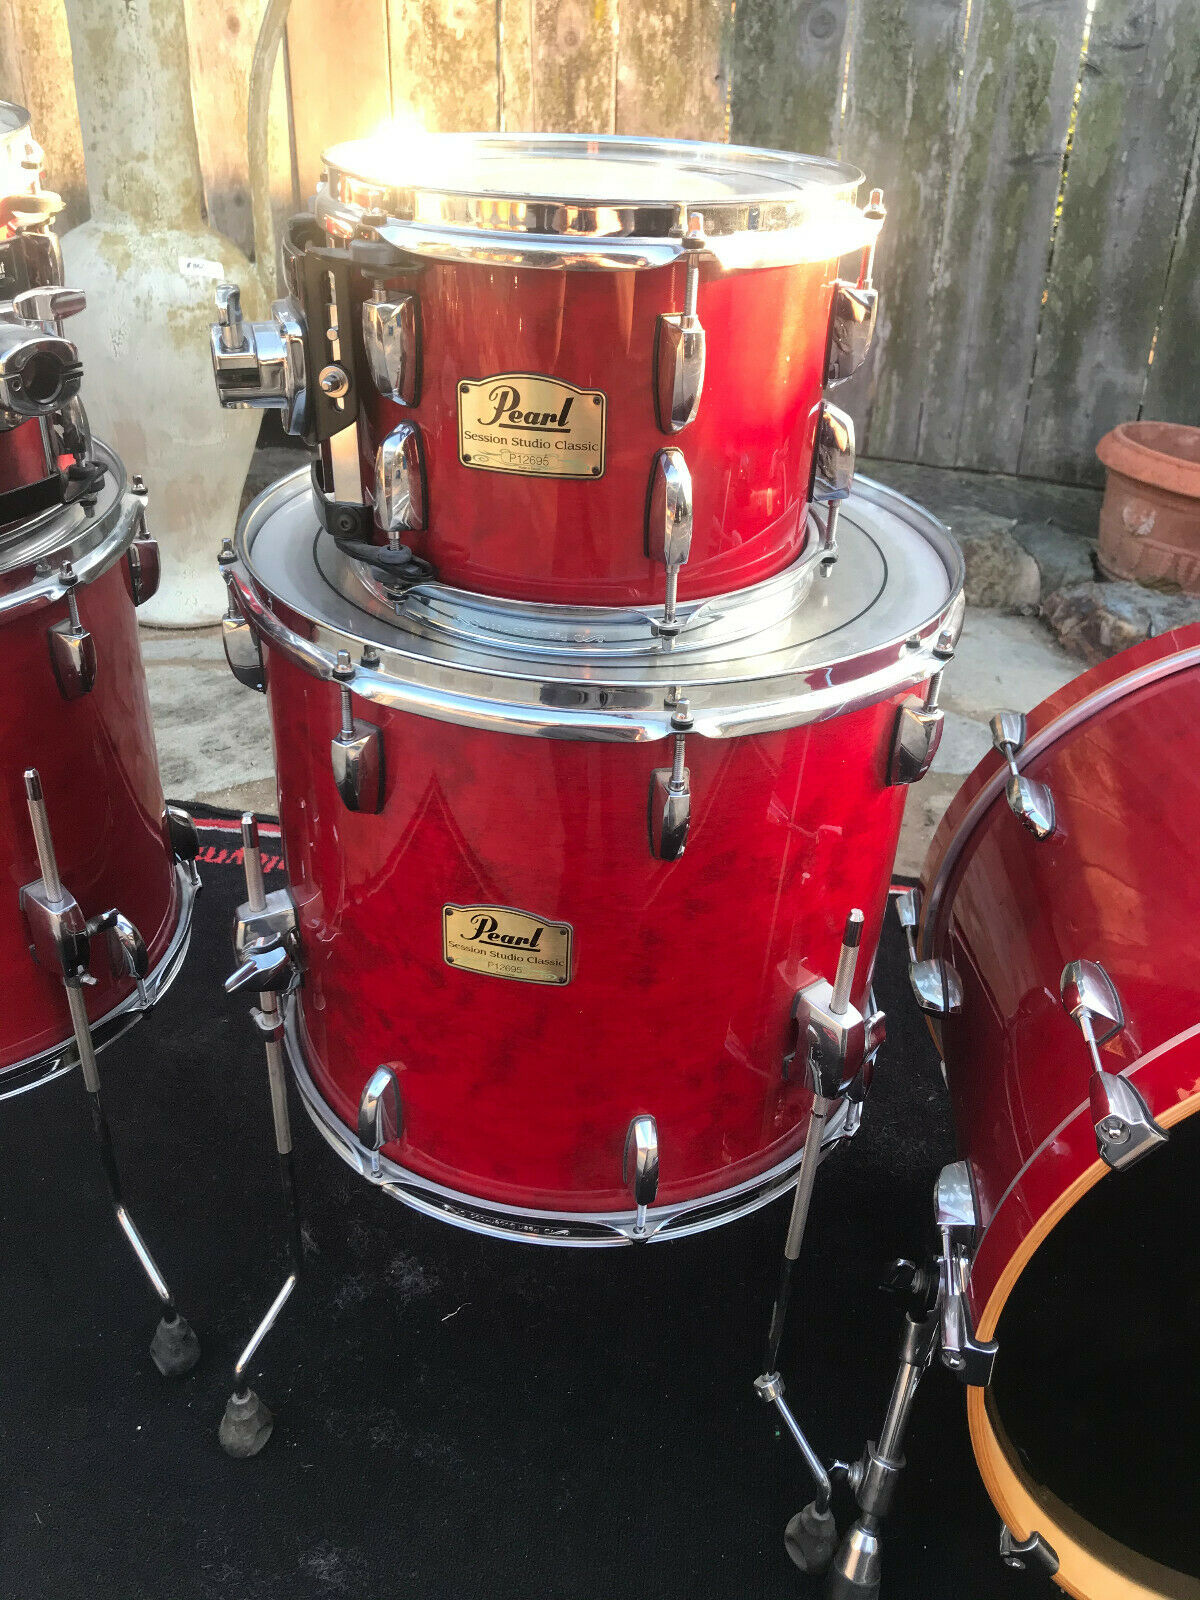 Pearl Session Studio Classic Sequoia Red Drum Set kit 5pc – Blakes Drum Shop